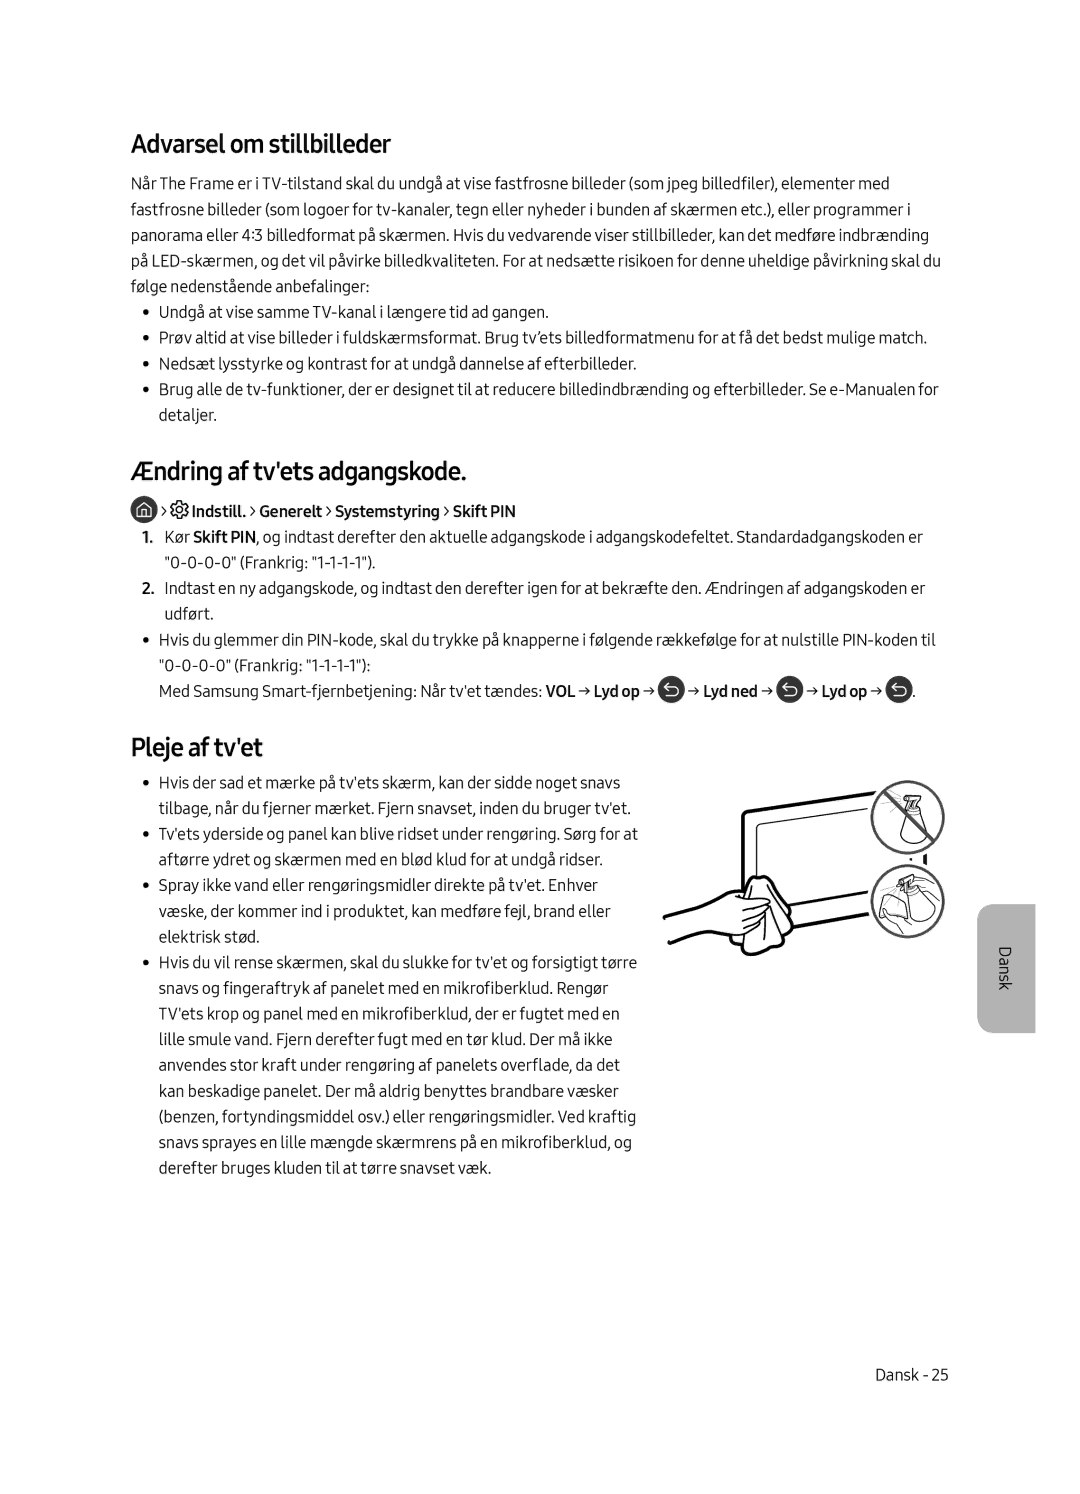 Samsung UE43LS003AUXXC manual Ændring af tvets adgangskode, Pleje af tvet, Indstill. Generelt Systemstyring Skift PIN 